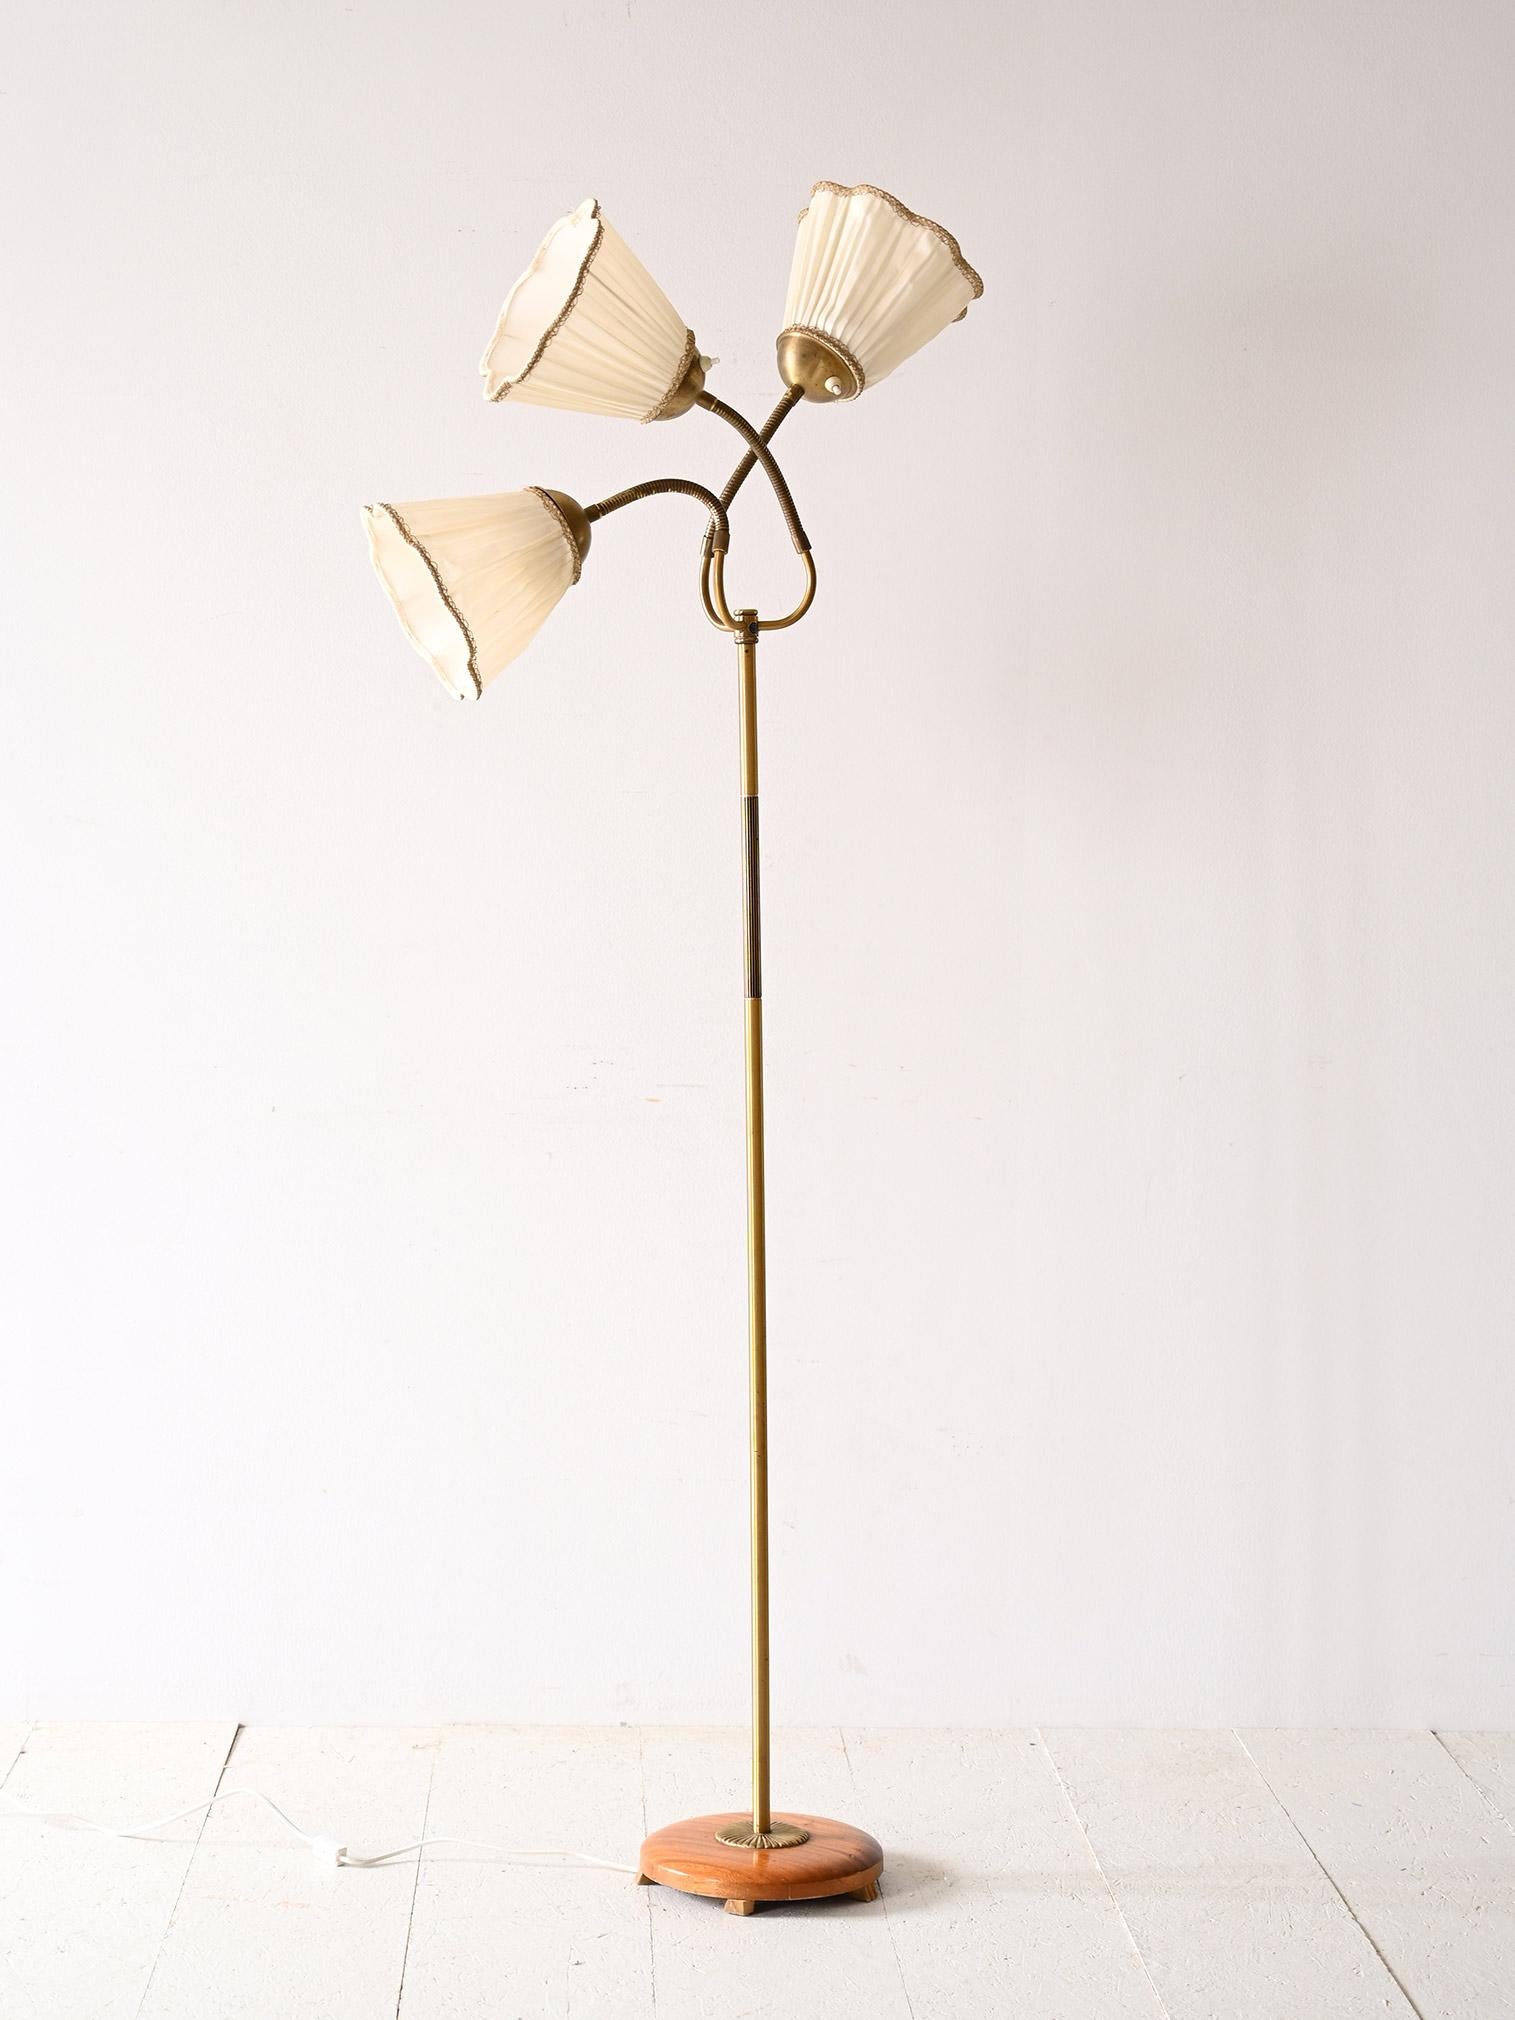 Lampe scandinave à trois têtes réglables.

Cette lampe des années 1960 se distingue par son design élégant et fonctionnel inspiré du style scandinave. Le cadre en métal doré apporte une touche de luxe et la partie proche de l'abat-jour est pliable,